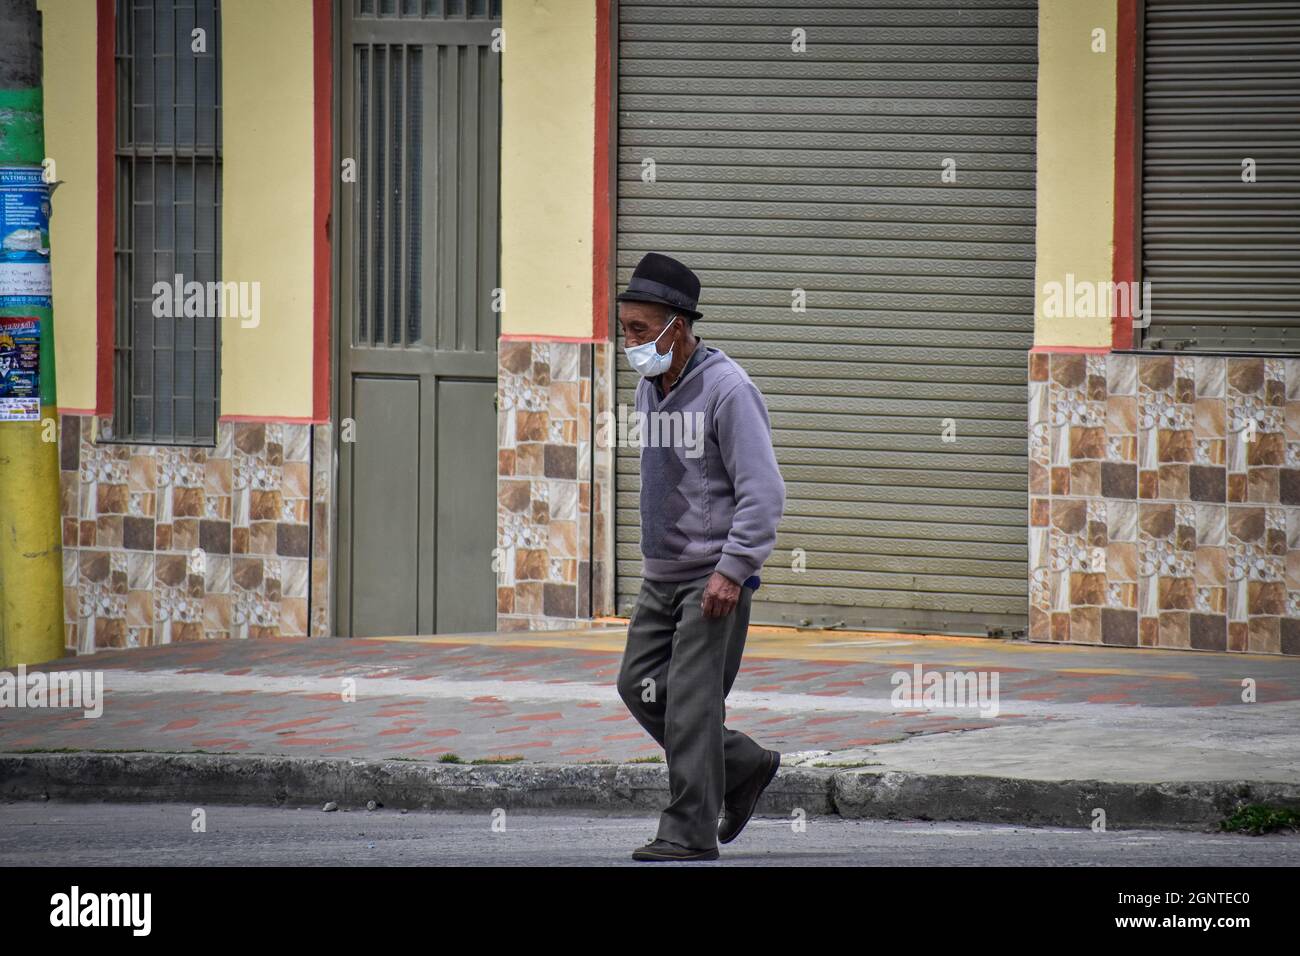 Ein älterer Mann überquert die Straße, als er am 15. August 2021 in Cumbal - Nariño, Kolumbien, eine Gesichtsmaske gegen COVID-19 trägt. Stockfoto